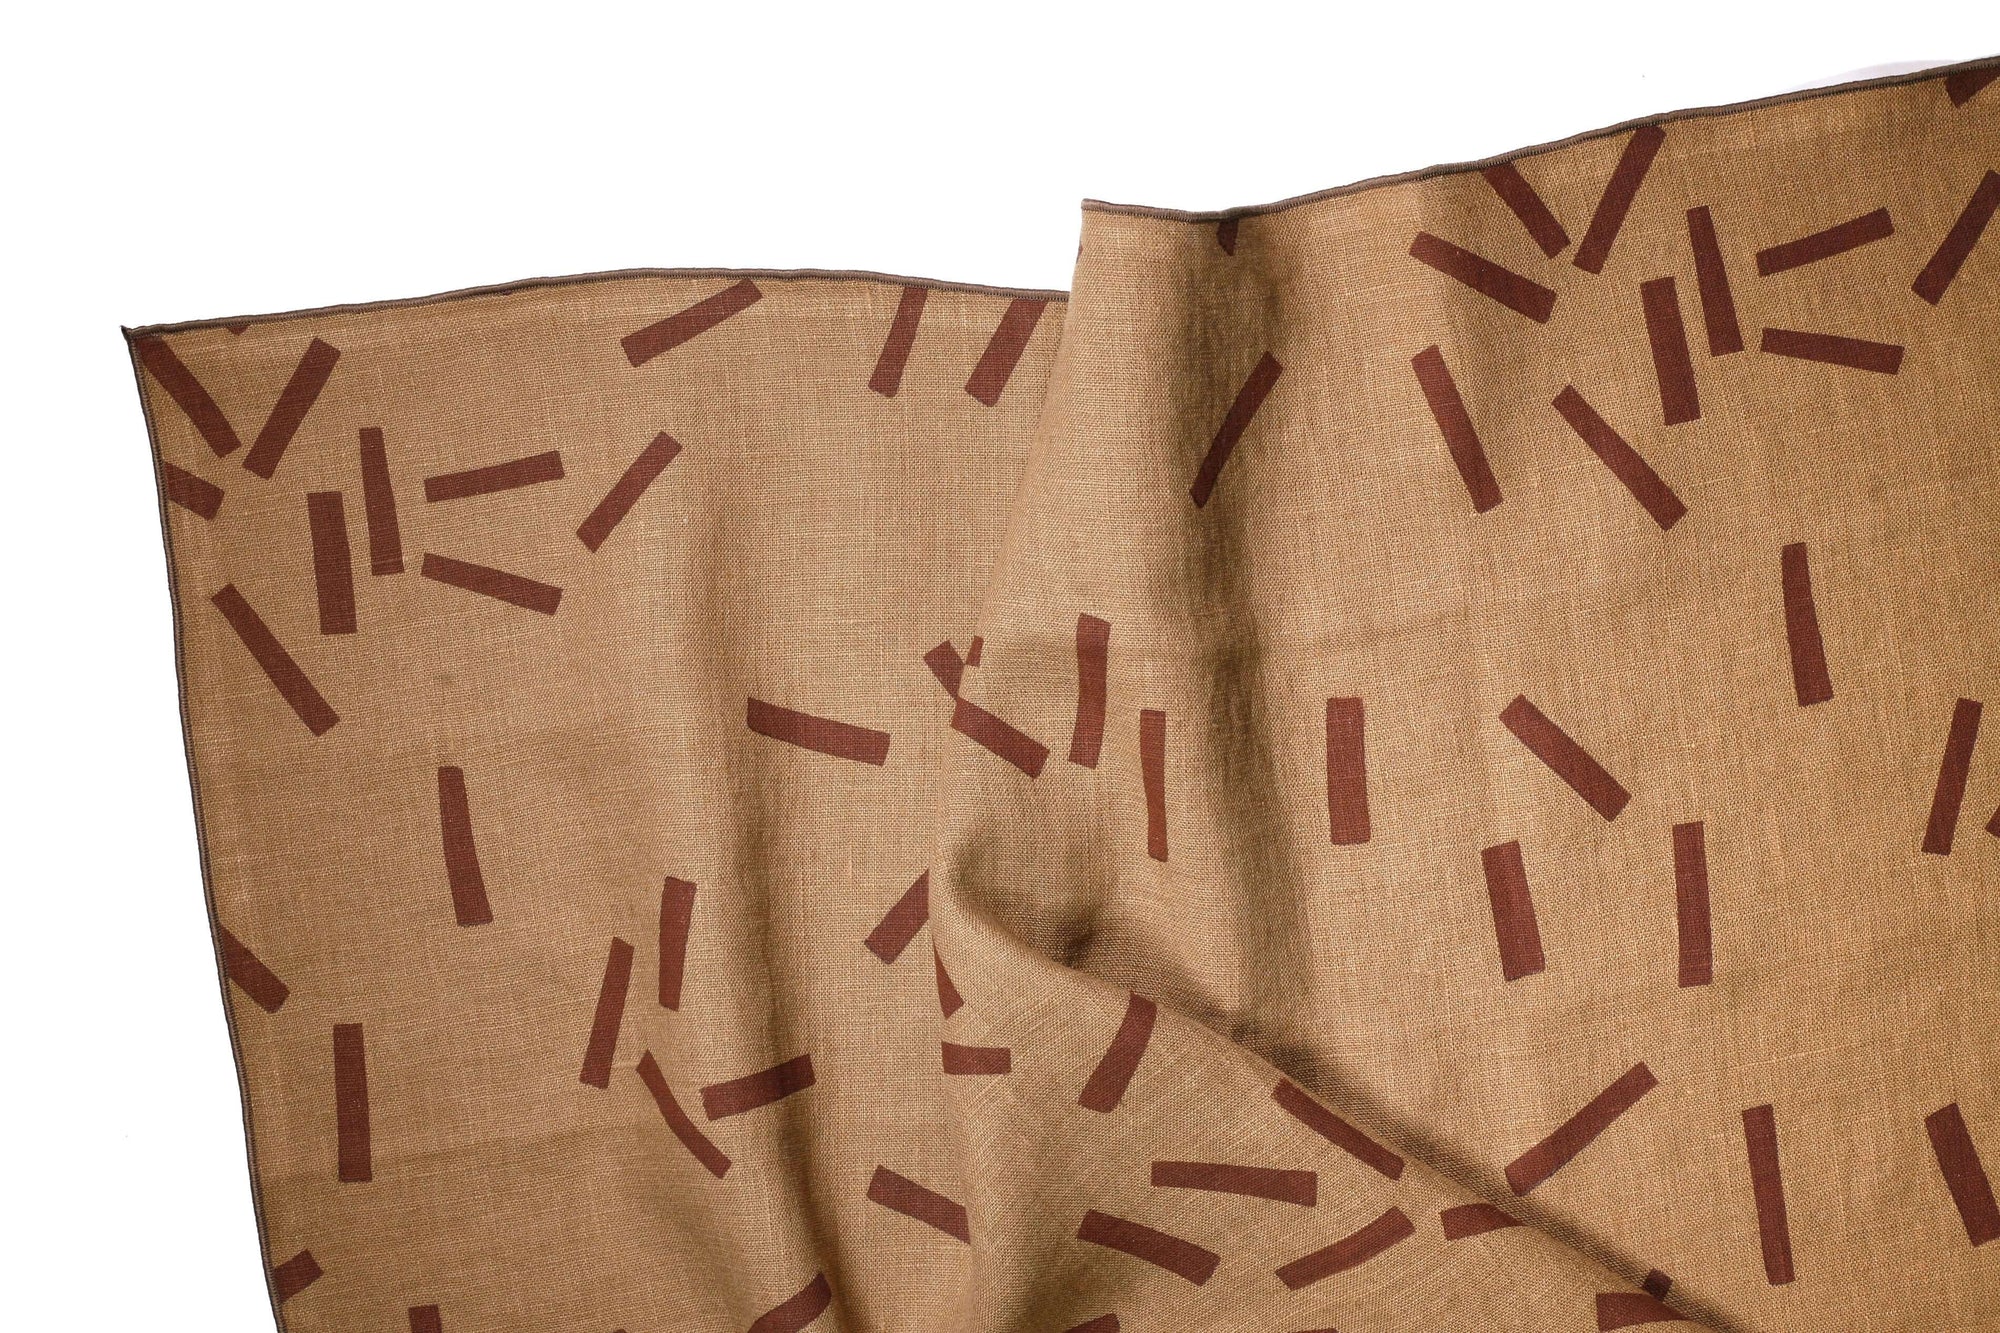 'Toss' Hand-Printed 100% Linen Tea Towel, Ginger colorway